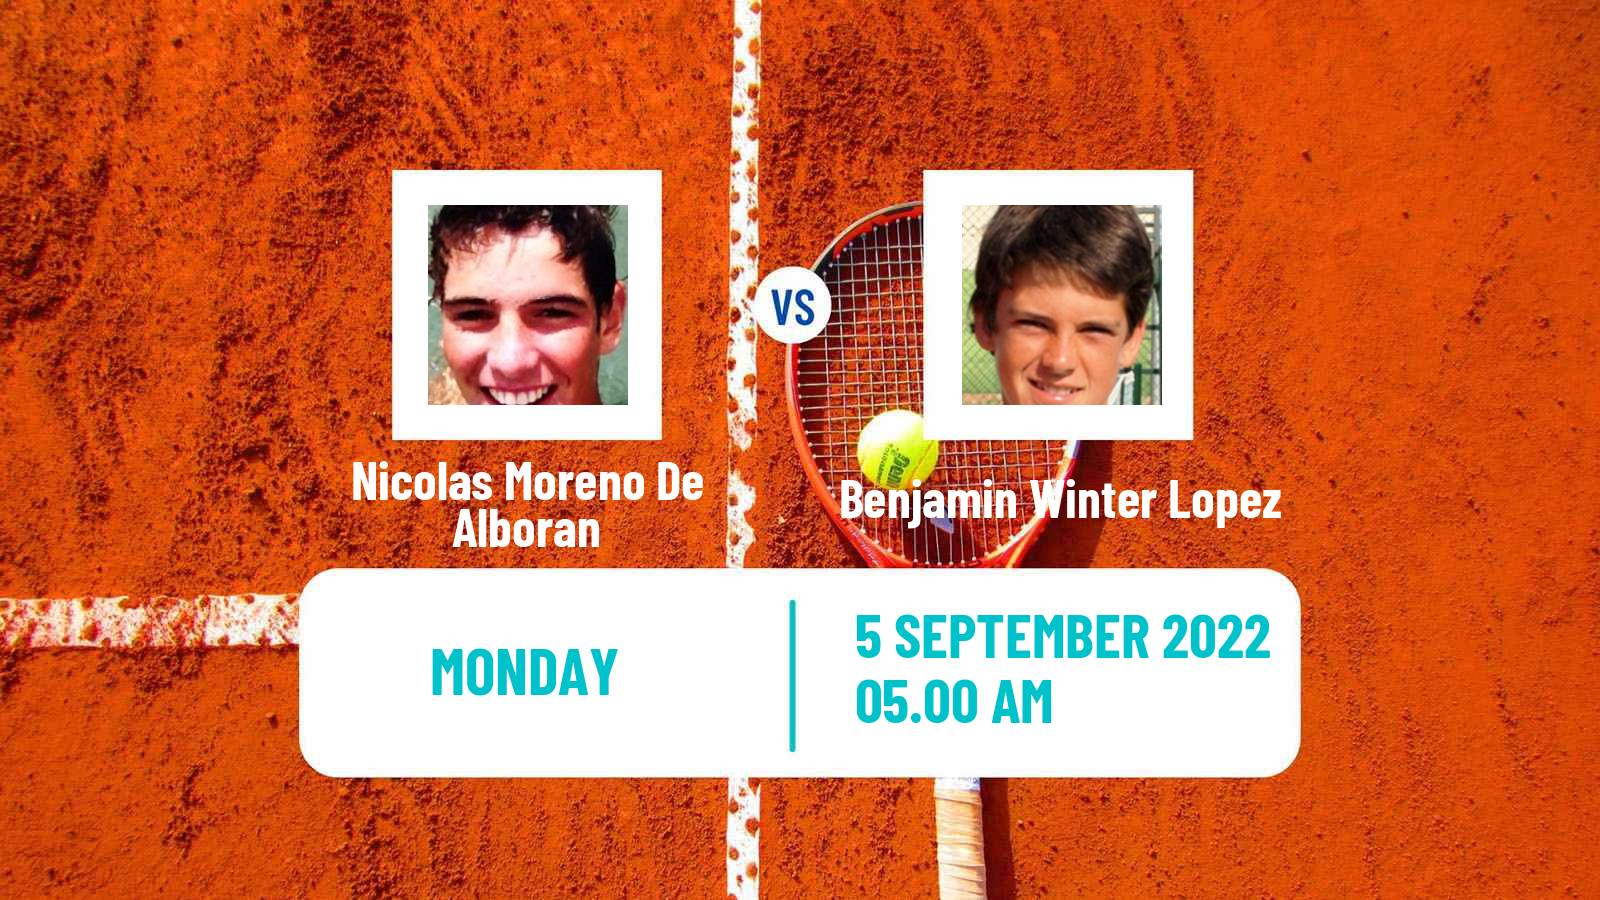 Tennis ATP Challenger Nicolas Moreno De Alboran - Benjamin Winter Lopez